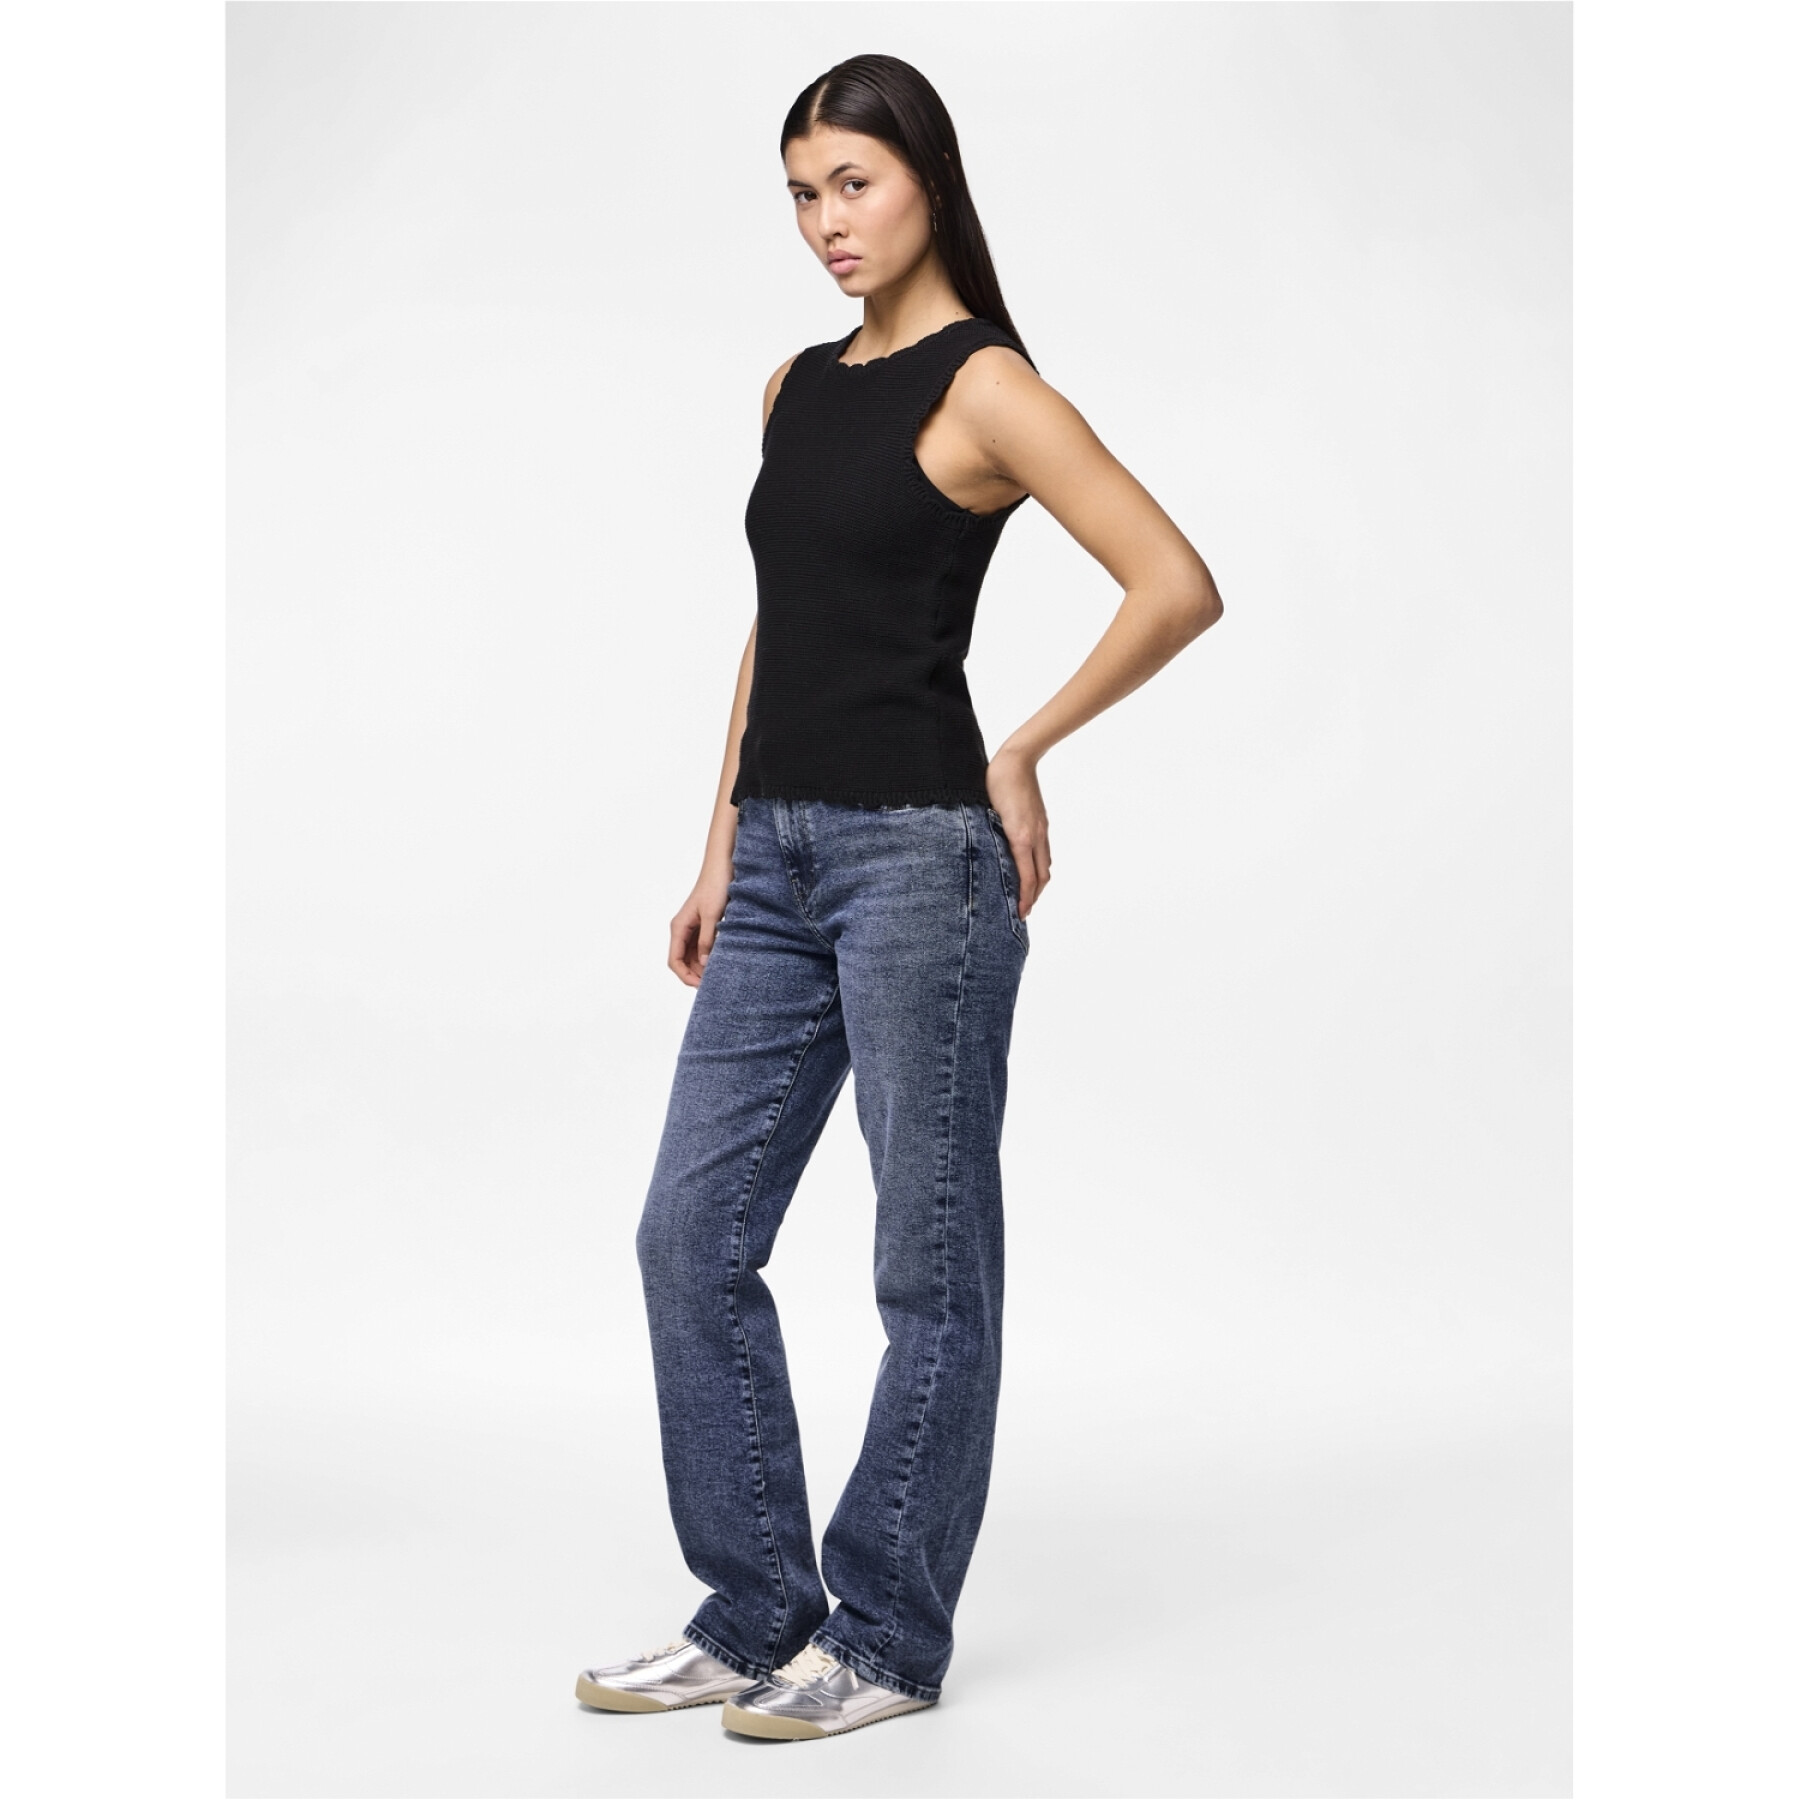 Rechte jeans voor dames Pieces Kelly Mw